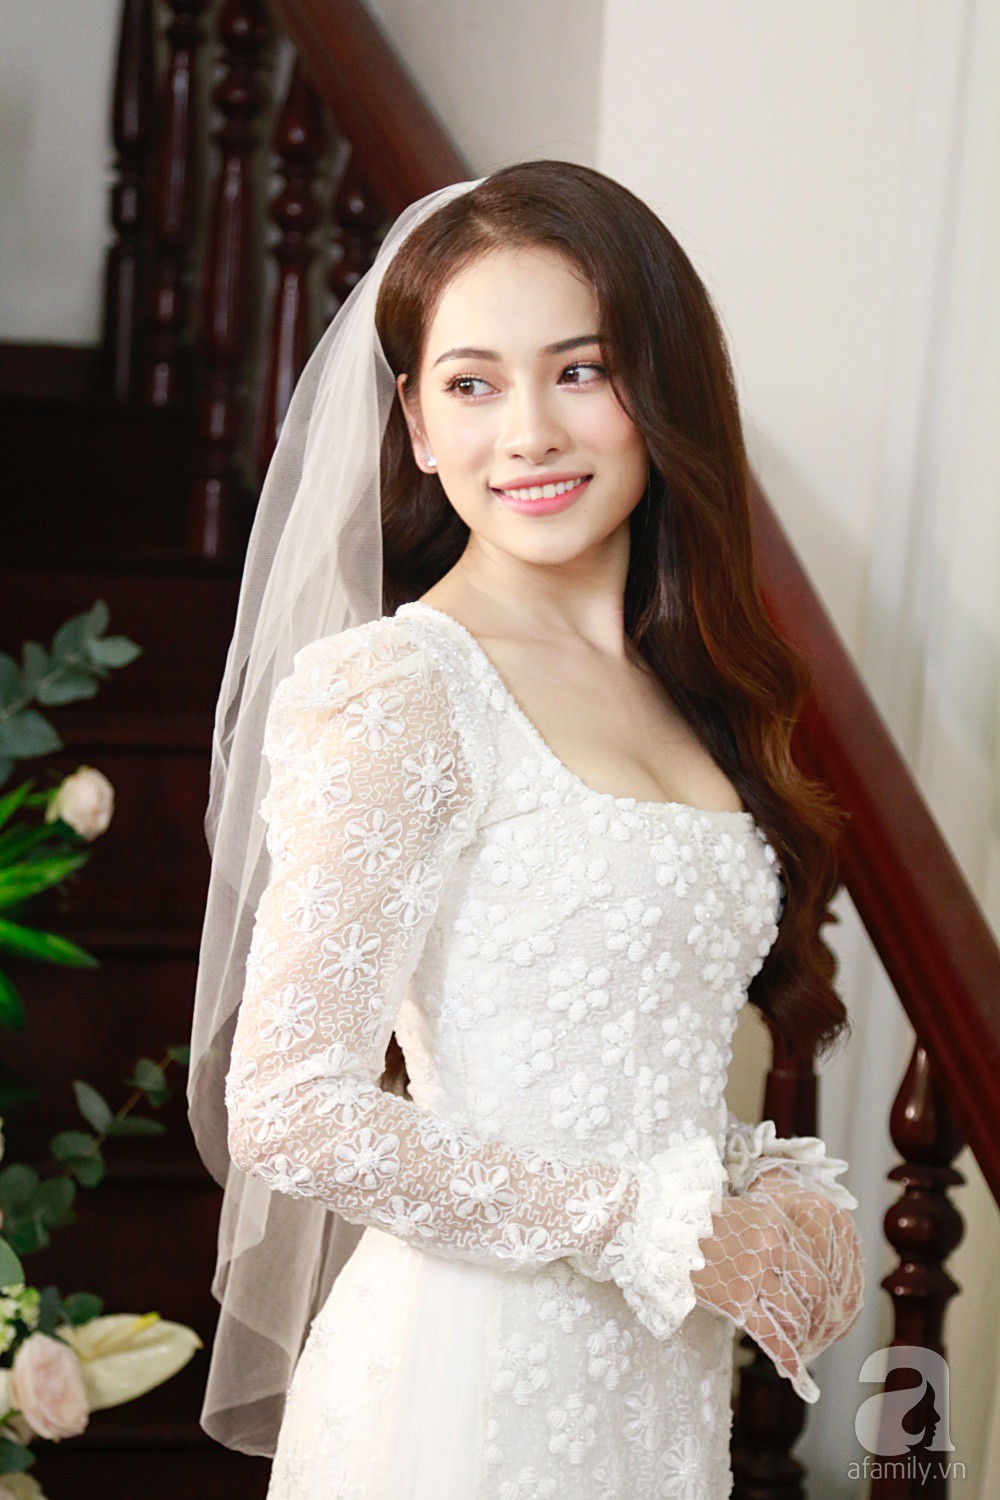 Cô dâu Sara Lưu lộ vòng 2 bất thường trong khoảnh khắc chụp nghiêng-1